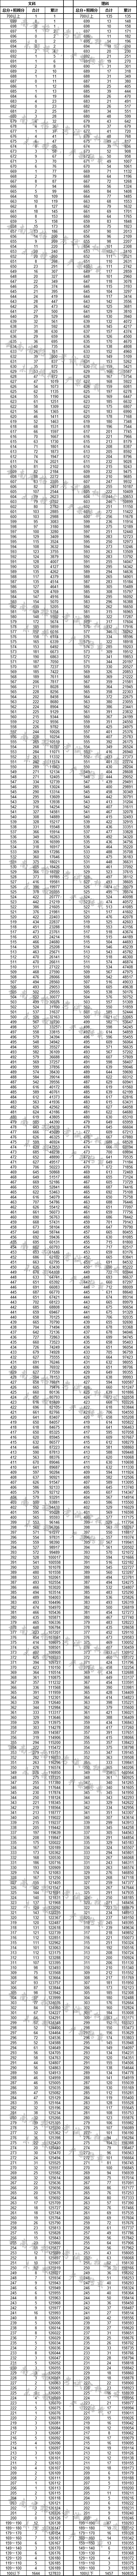 2022年云南高考成绩排名一分一段表